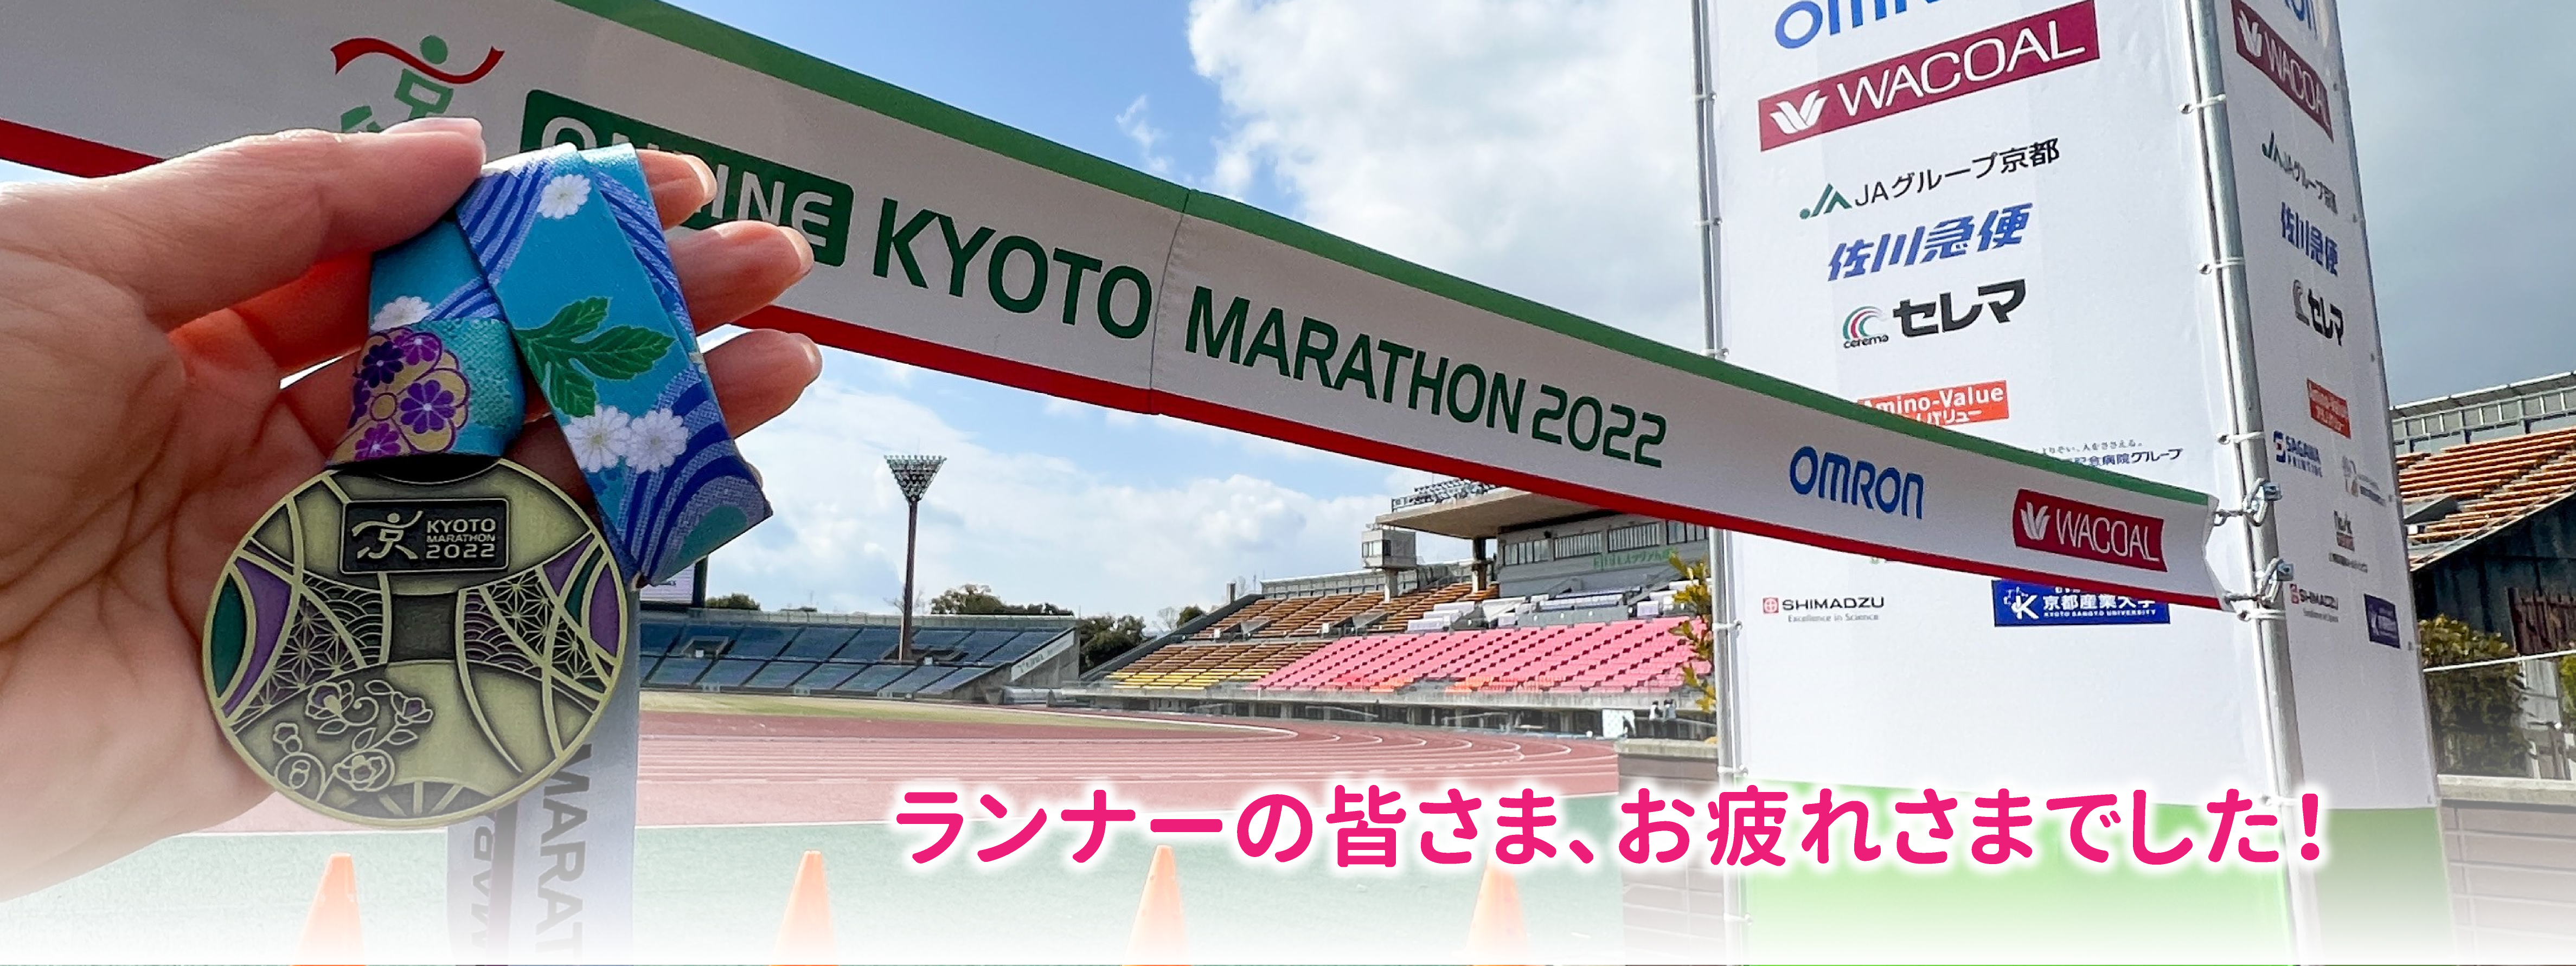 2202京都マラソン (2)